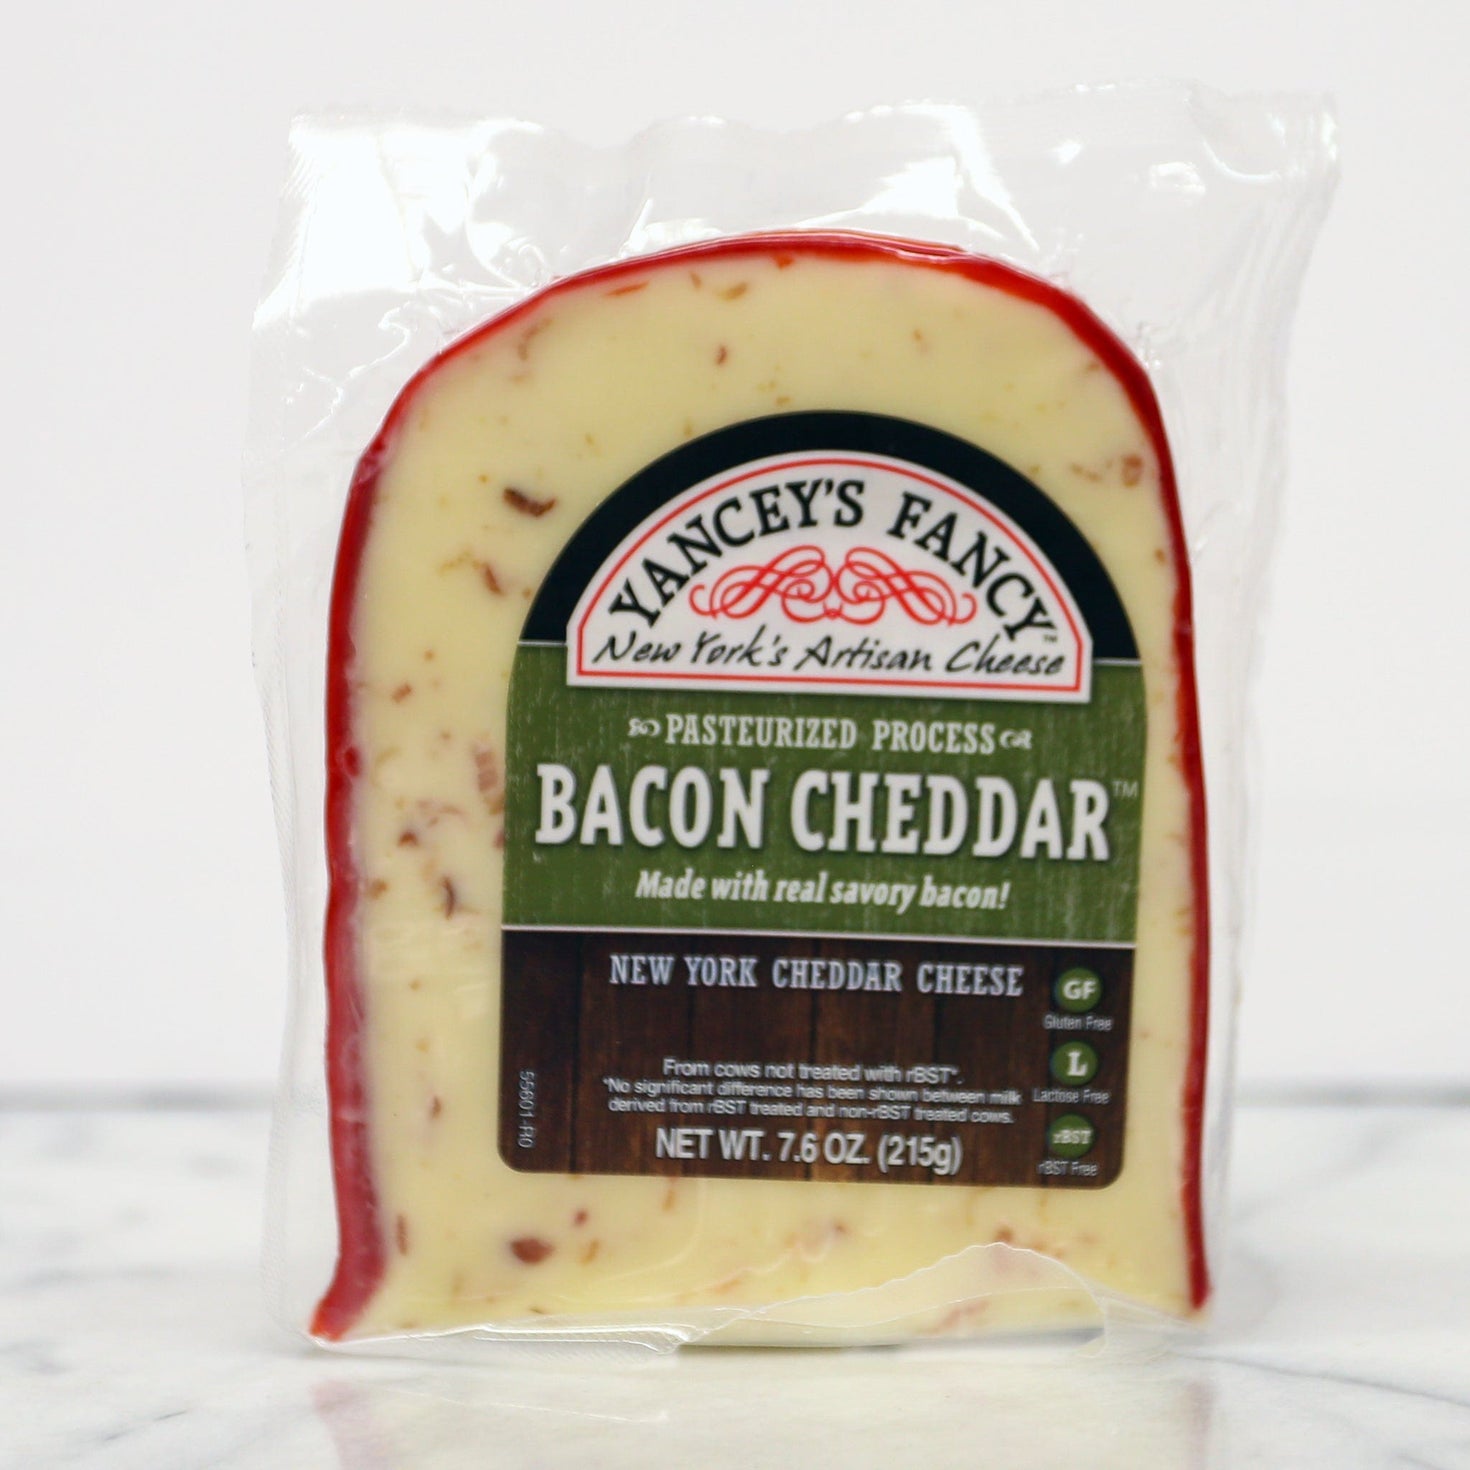 Yancey's Fancy Cheese - Bacon Cheddar 7.6oz